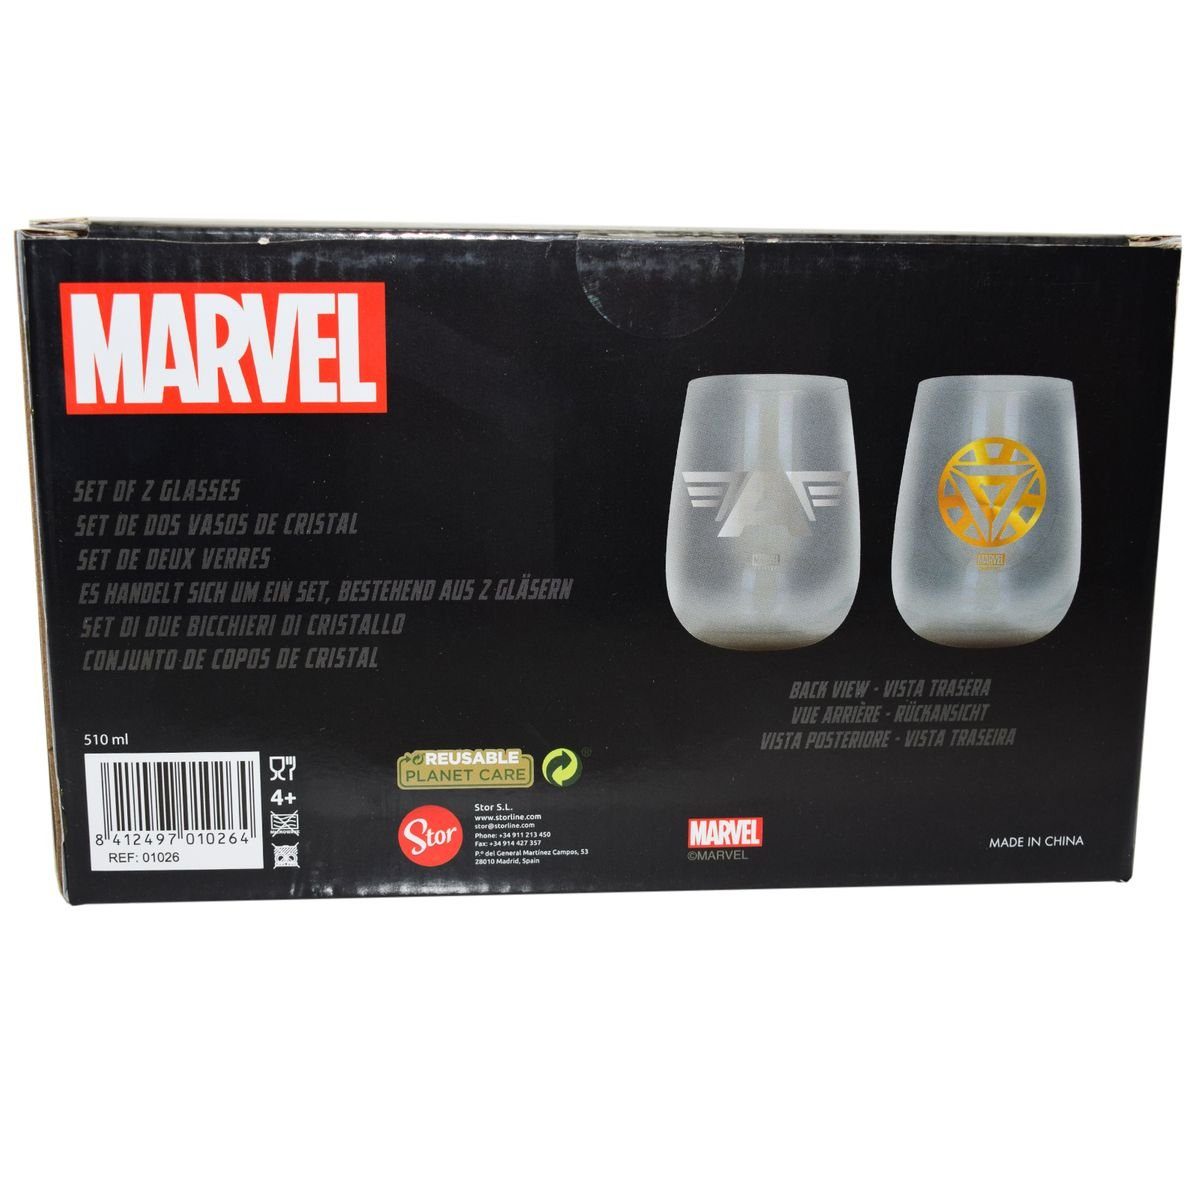 Set Geschenkkarton Metallic Marvel im authentisches Glas Stor Trinkgläser Glas, 2 Design Gläser, Avengers